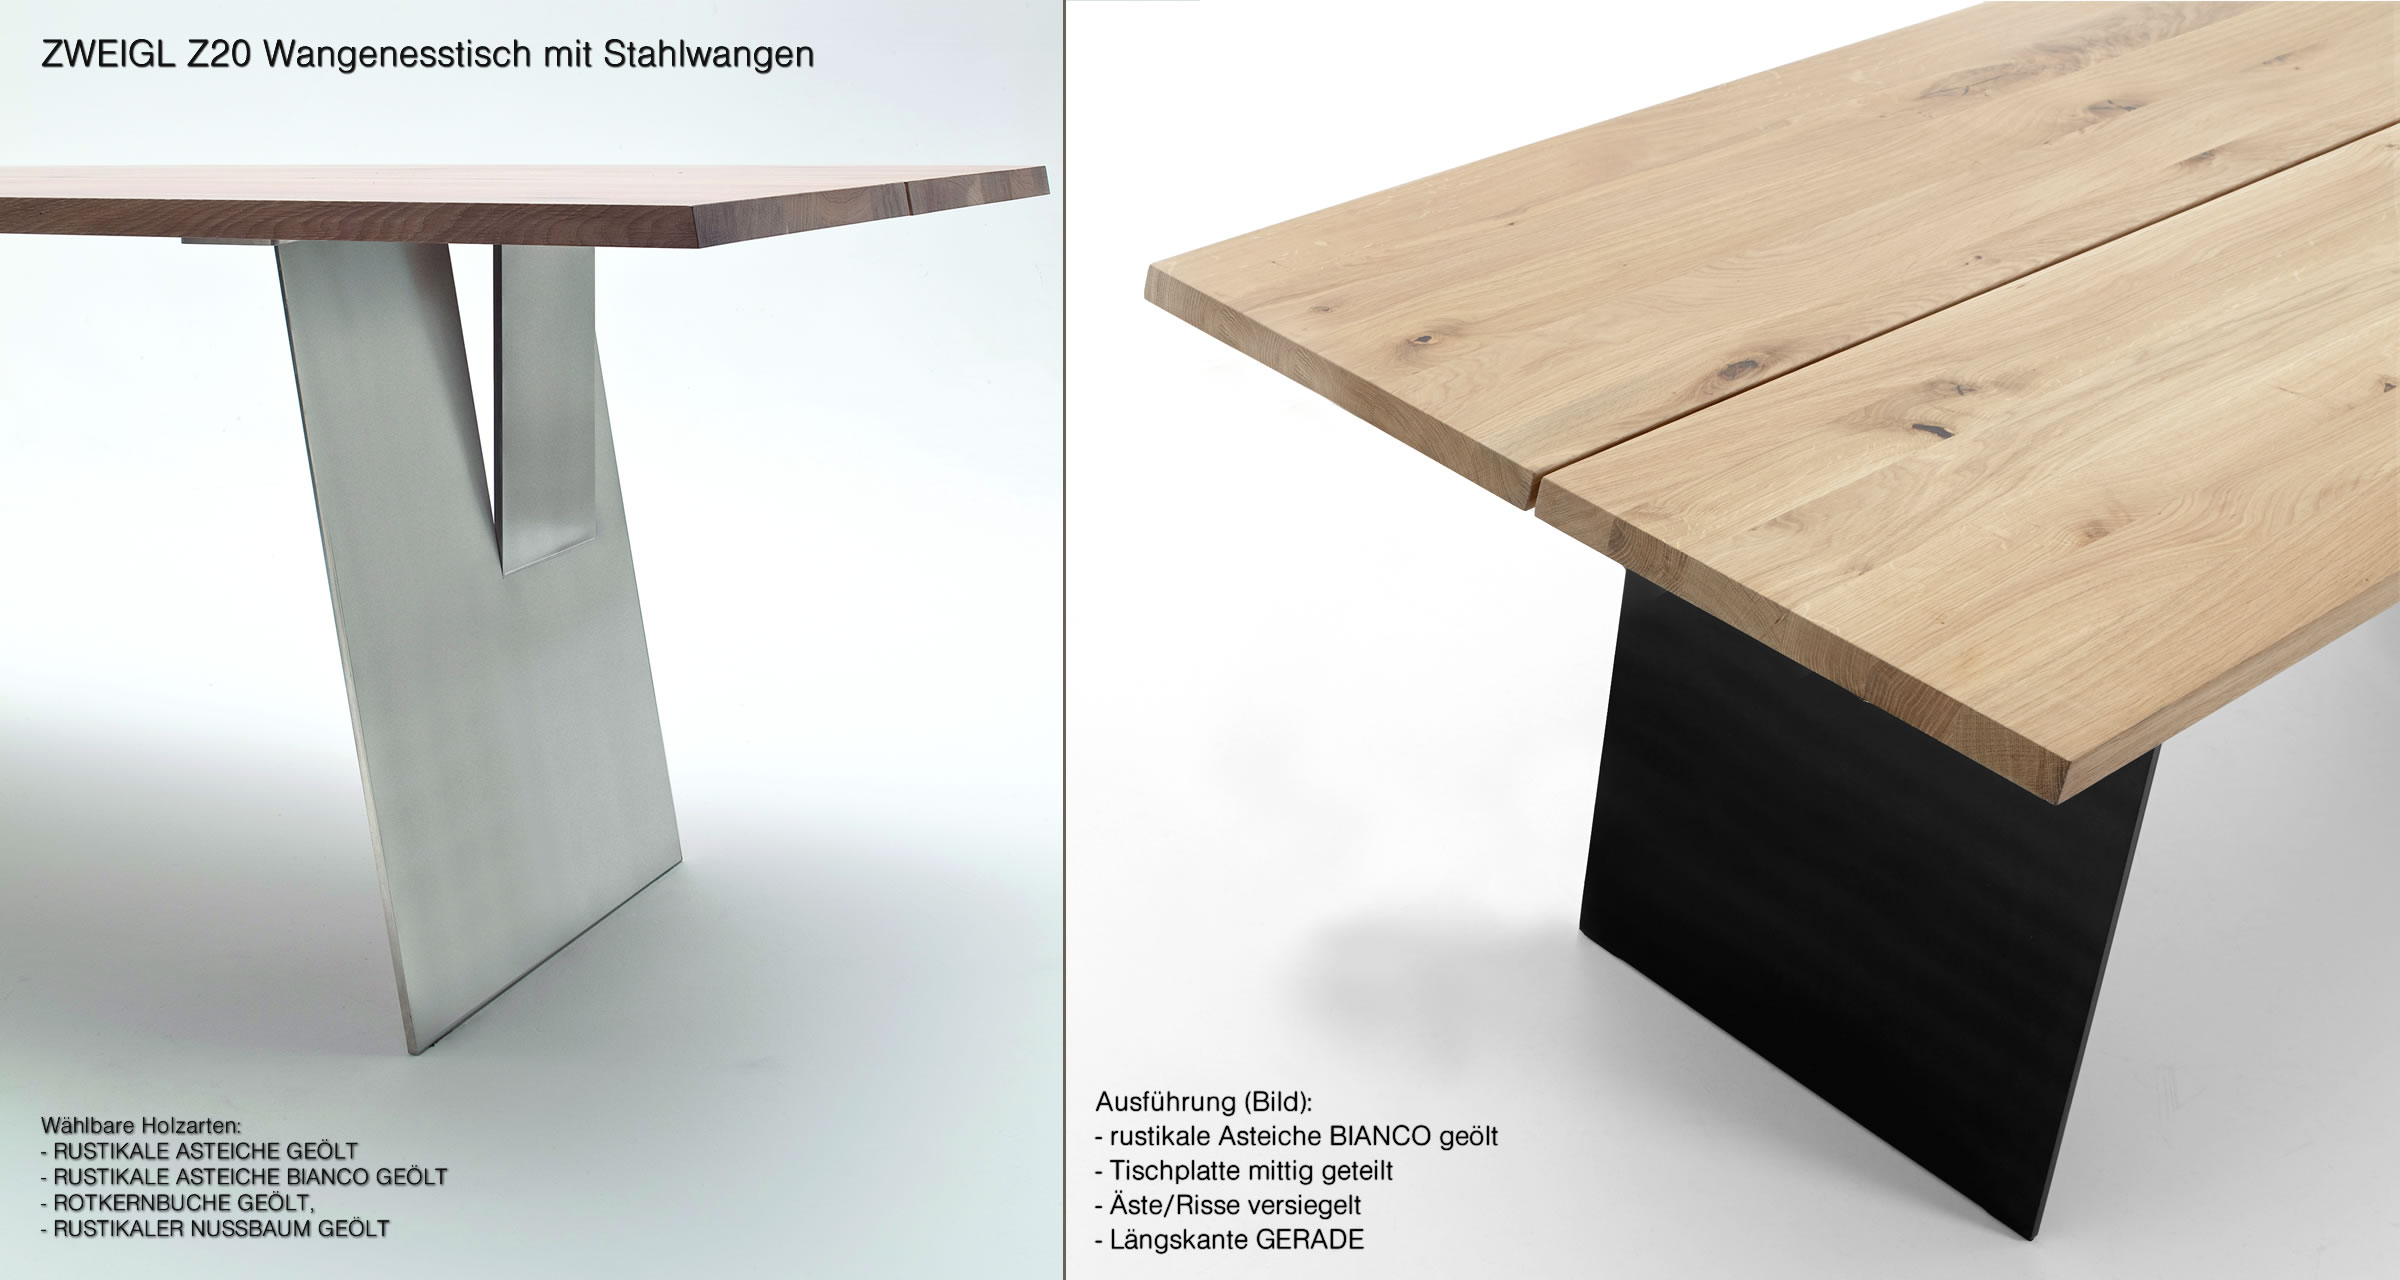 ZWEIGL Z20 Massivholz-Tisch mit Stahlwangen - aus nachhaltigem Massivholz  in rustikaler Asteiche. von Wimmer | Möbel aus Massivholz bei NIEHOFF